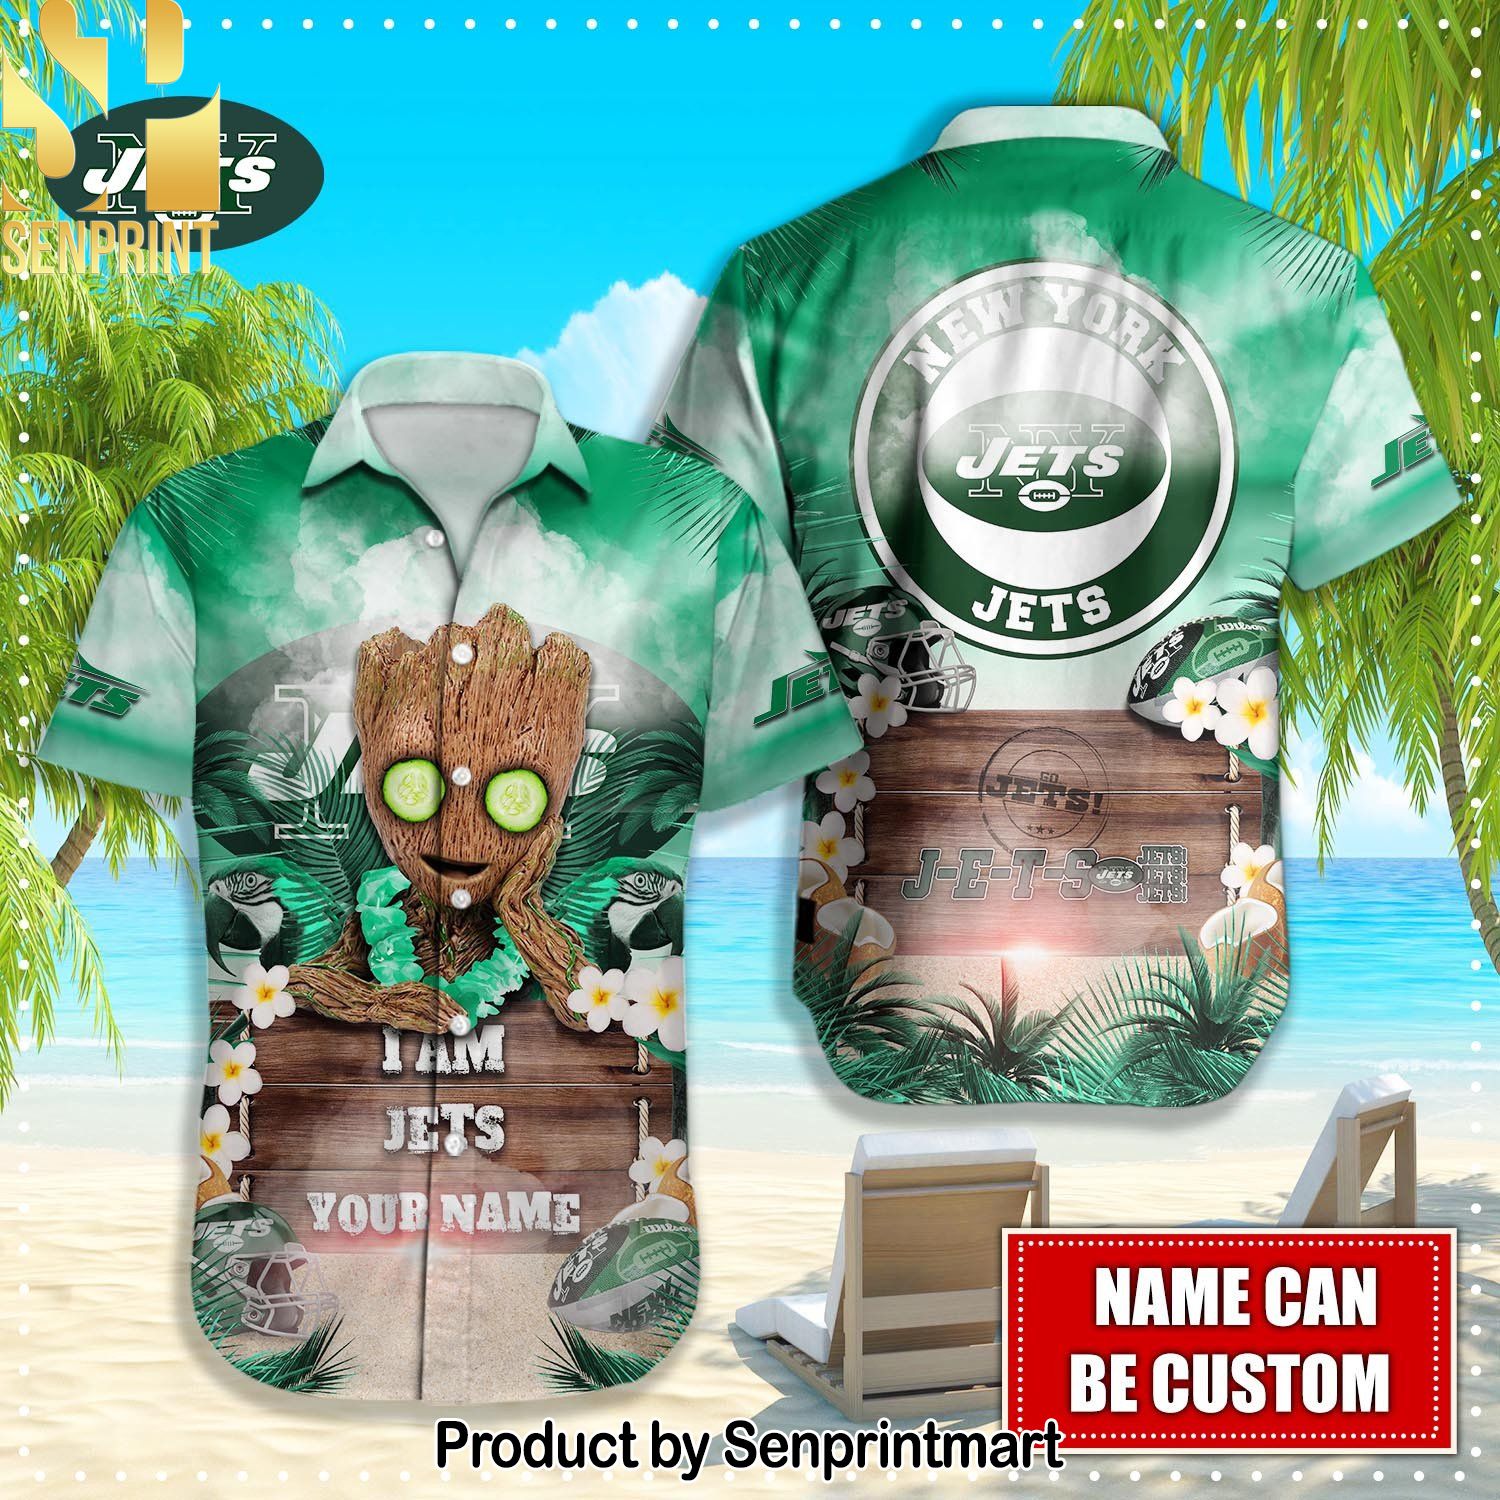 New York Jets NFL Casual Full Printing Hawaiian Shirt and Shorts